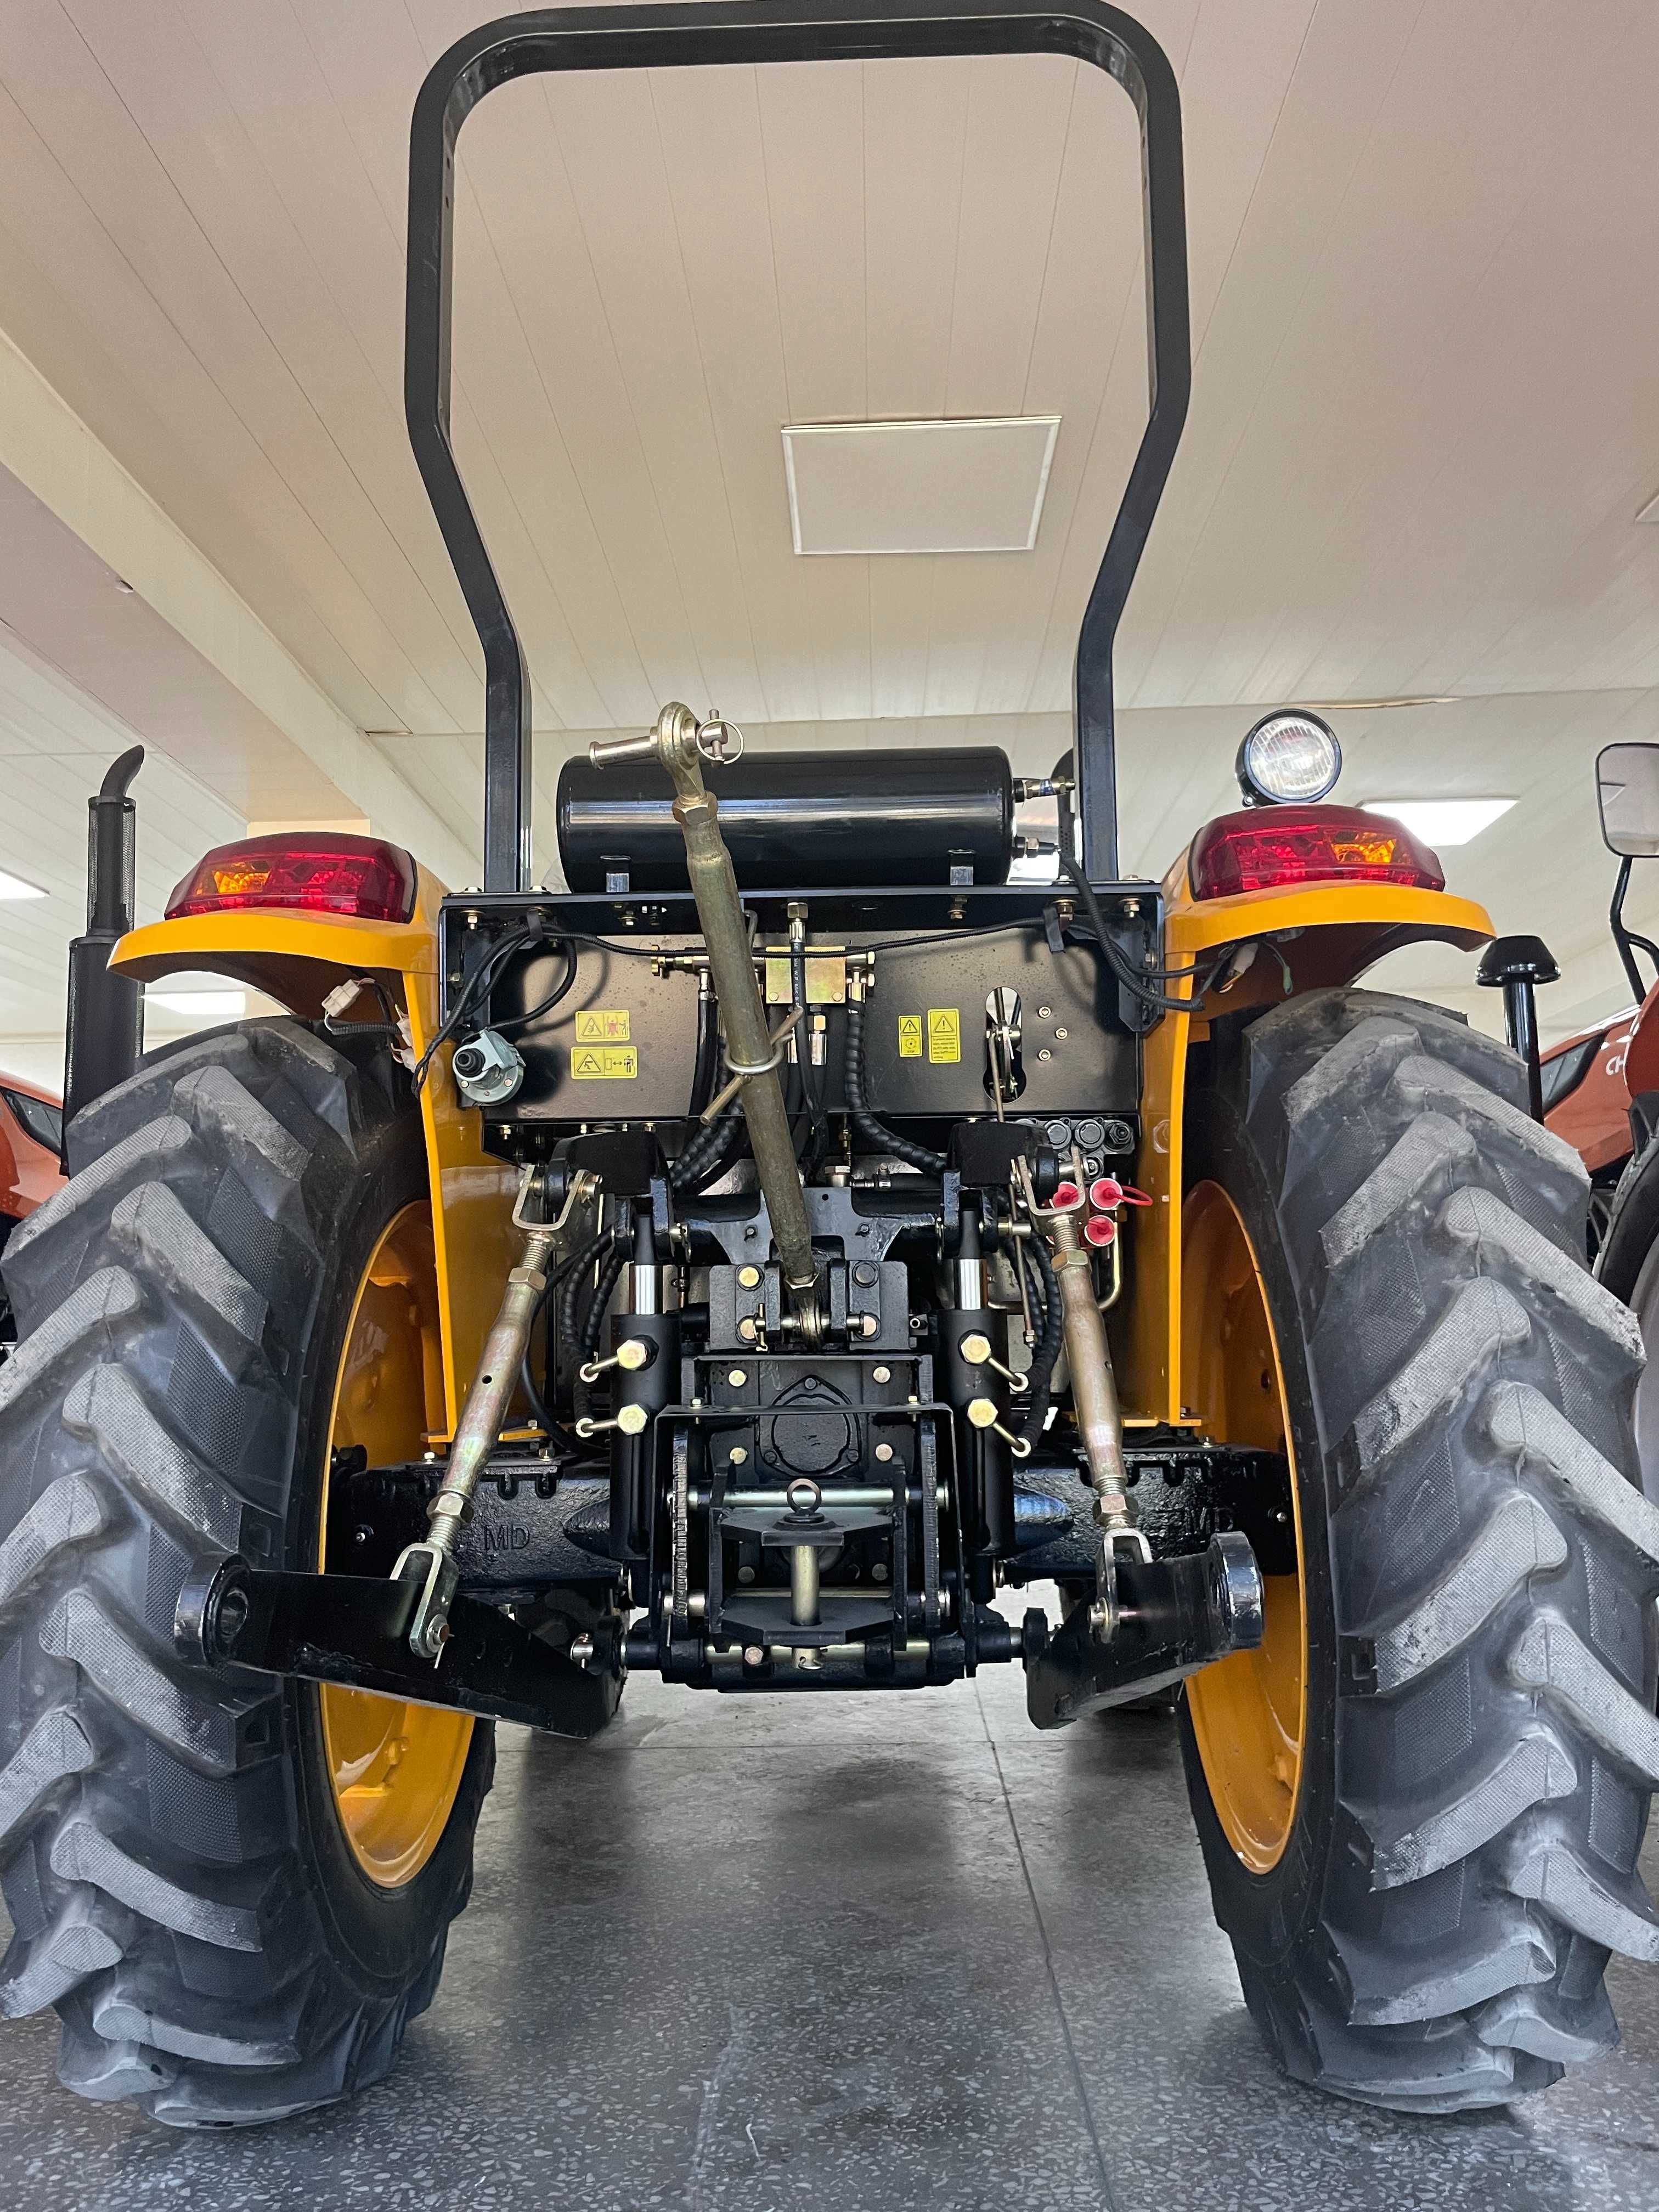 LEGENDA yangi ko'rinishda Traktor CHIMGAN TT 404 Yellow EDITION